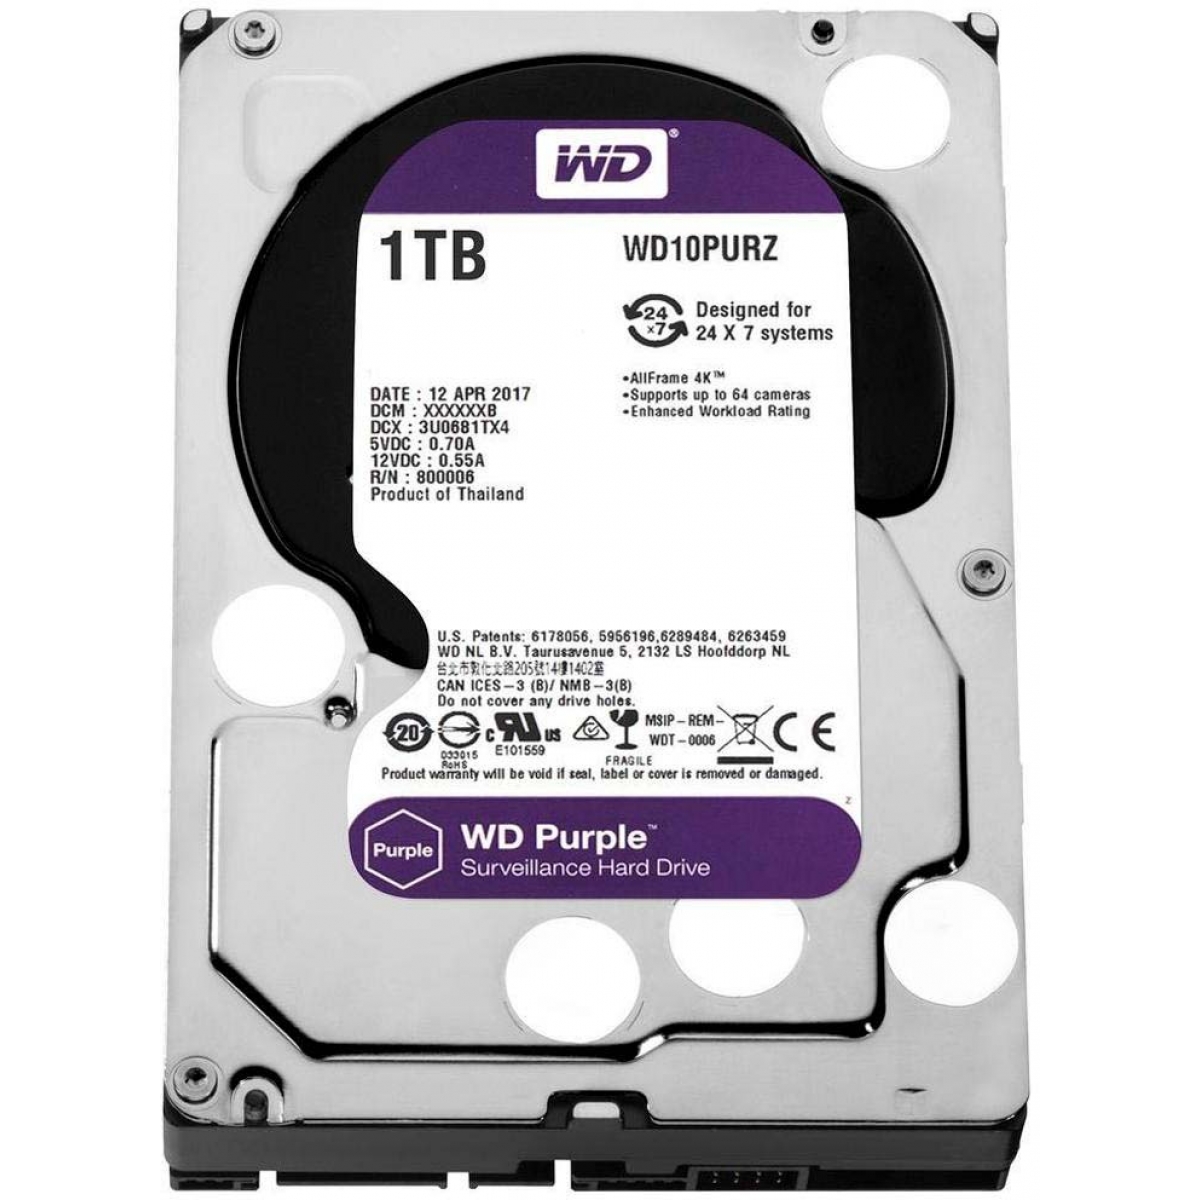 HD WD Purple 1TB, Sata III, 5400RPM, 64MB, WD10PURZ